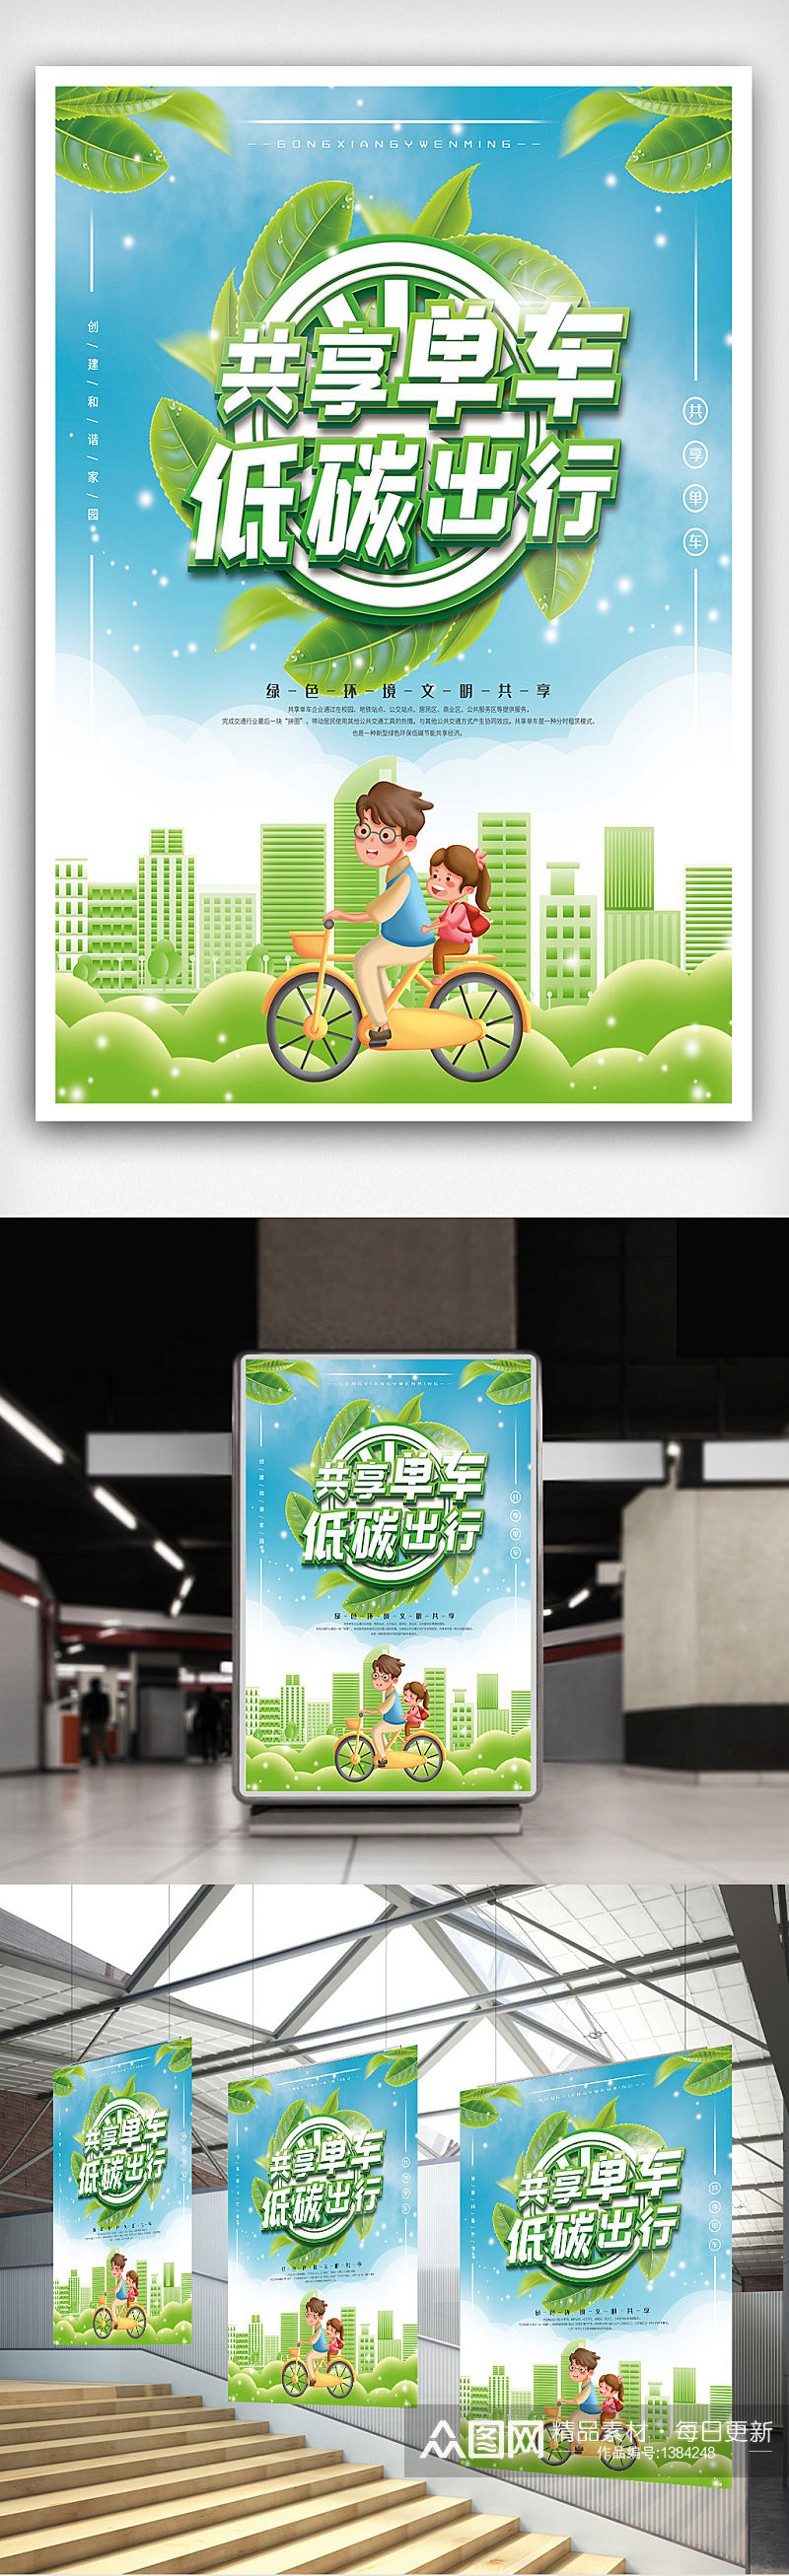 共享单车绿色低碳环保海报素材